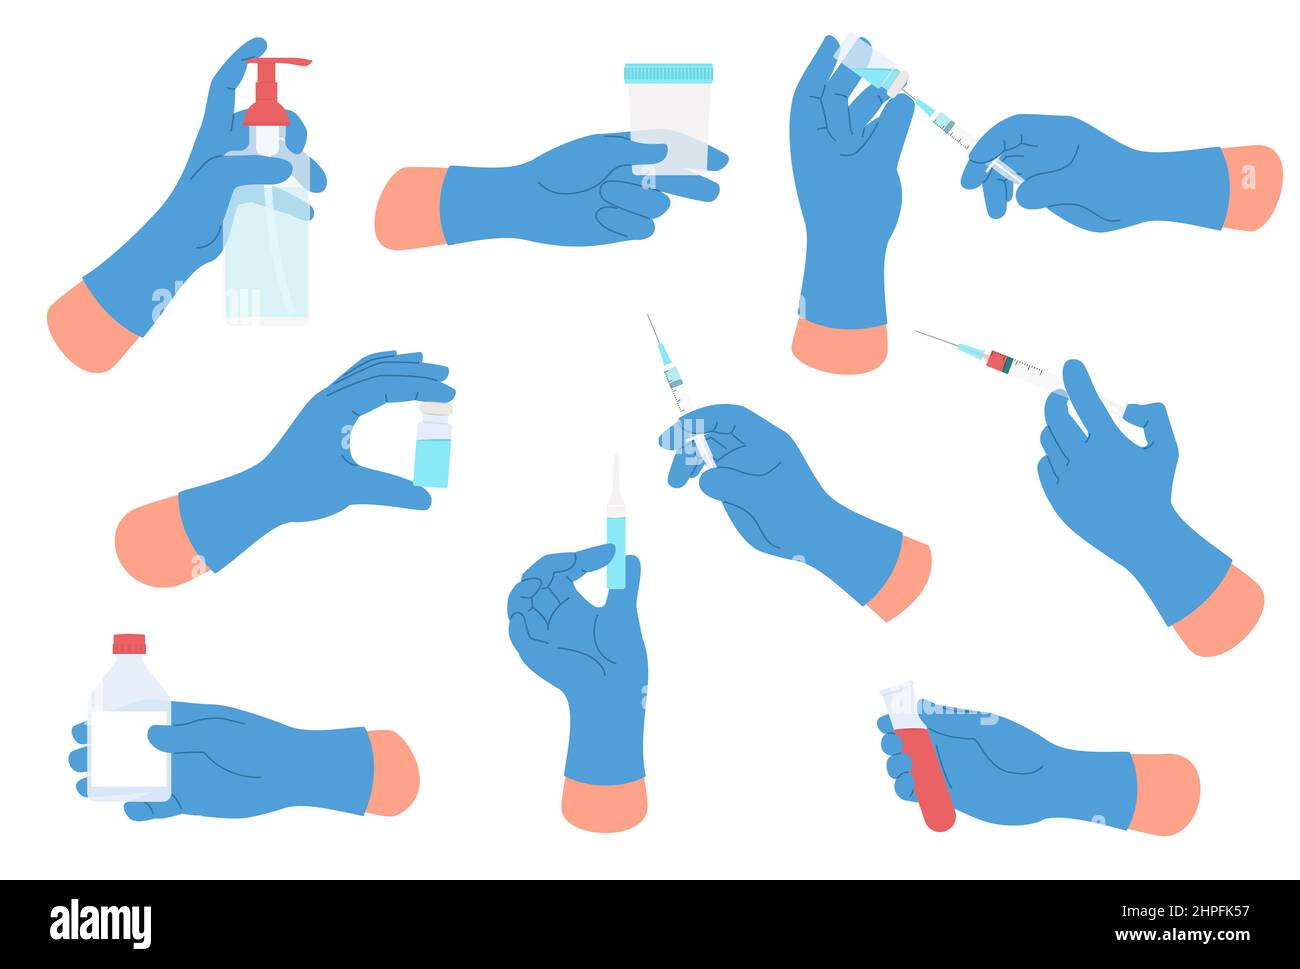 Medizinische Hände. Arztarme mit Operationshandschuhen halten verschiedene medizinische Werkzeuge bereit. Handflächen mit Injektionen und Ampullen. Reagenzglas und Impfstoffspritze Stock Vektor